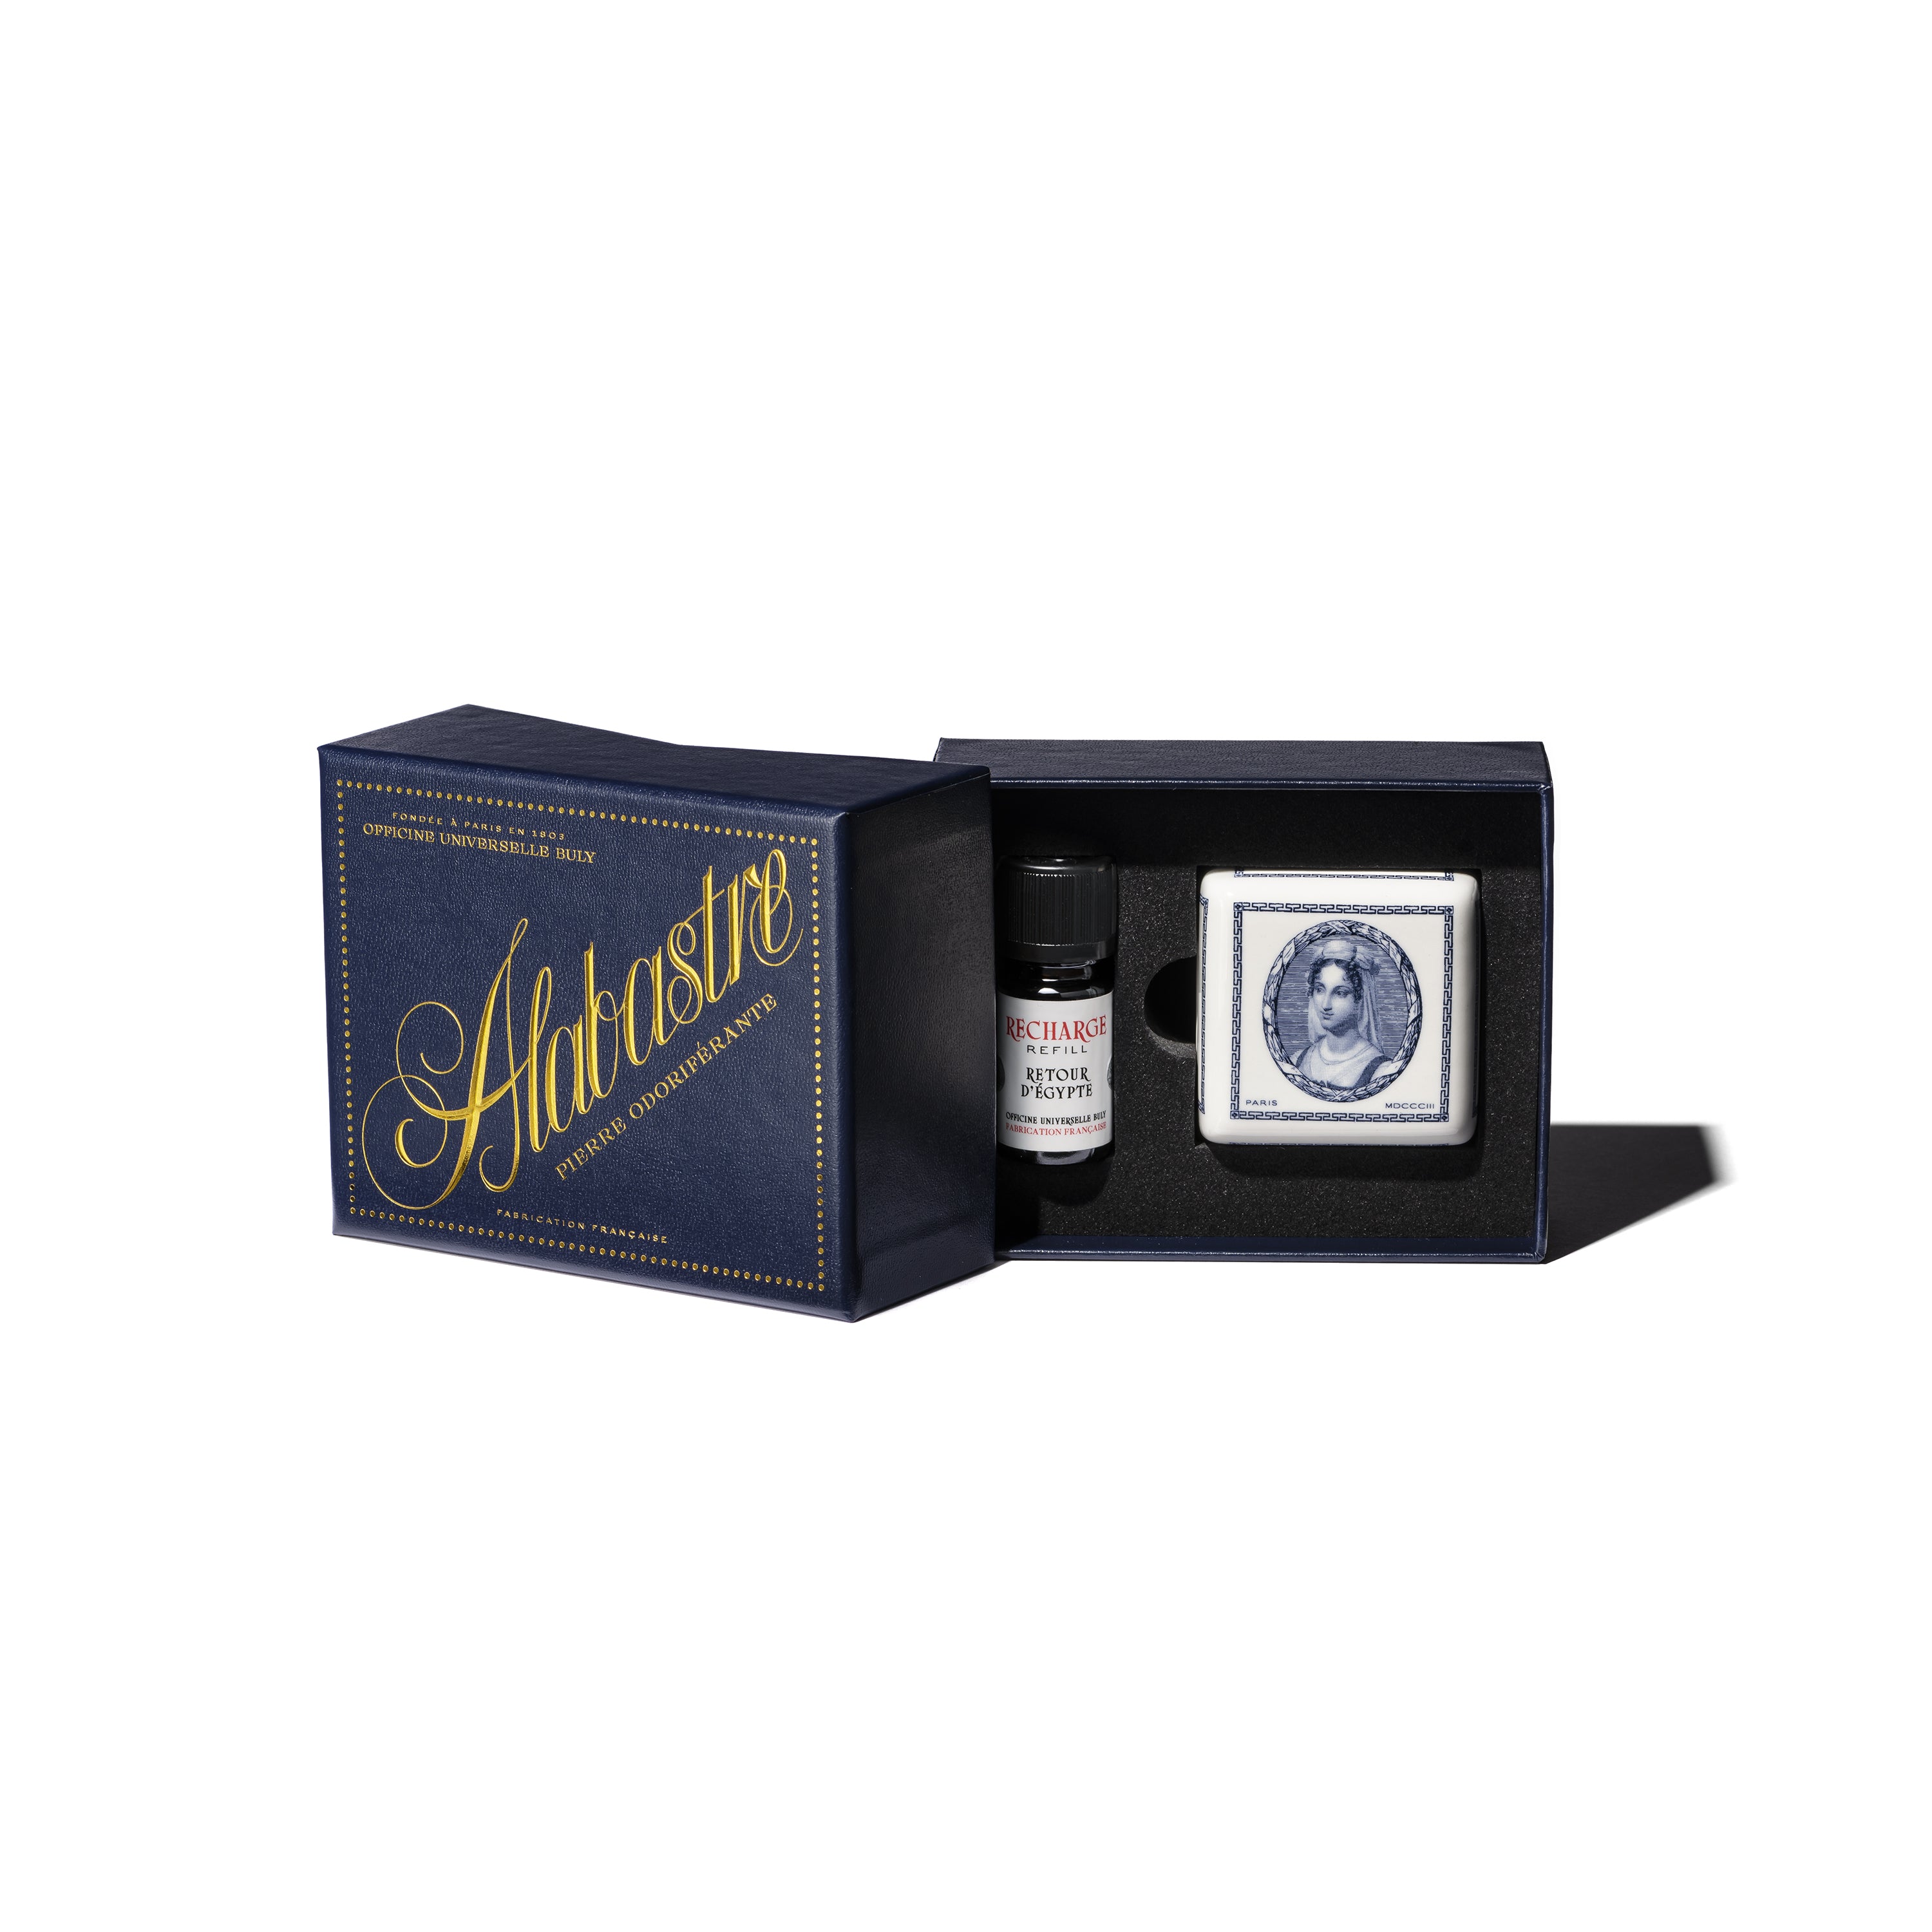 Alabastre - Diffuseur de parfum d'intérieur - Retour d'Egypte - Officine  Universelle Buly